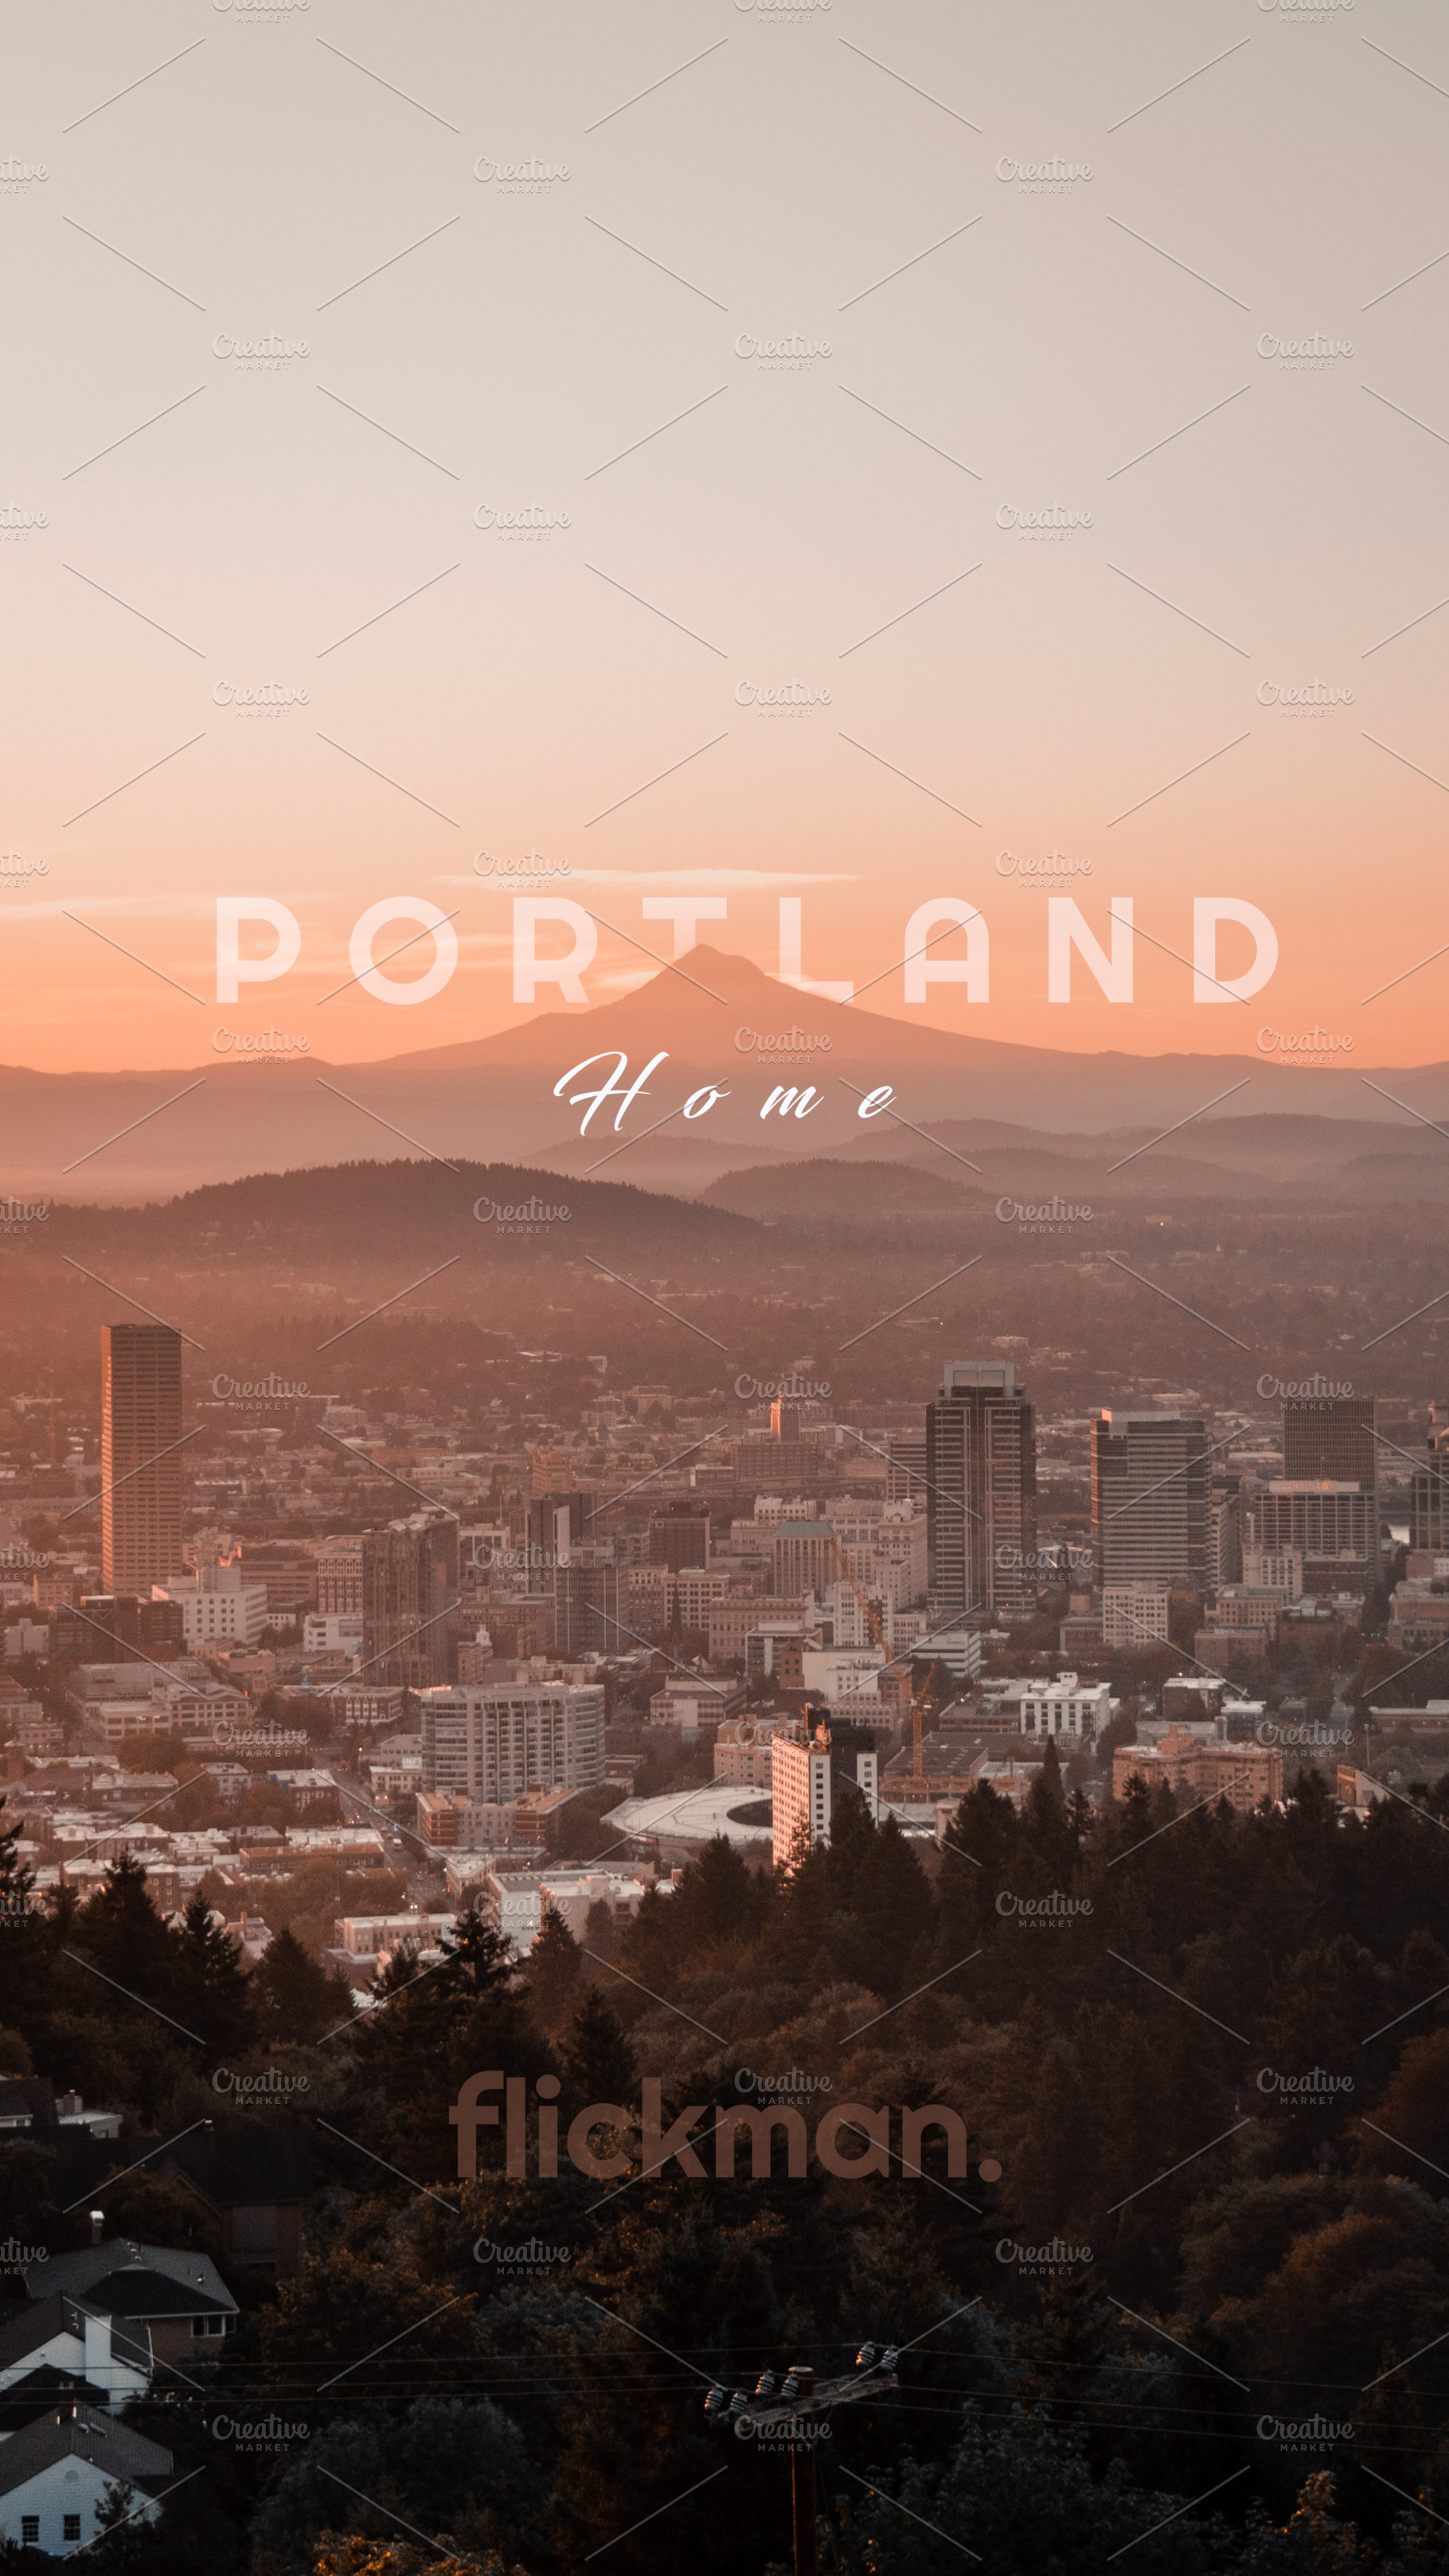 Portland, Oregon iPhone Wallpaper